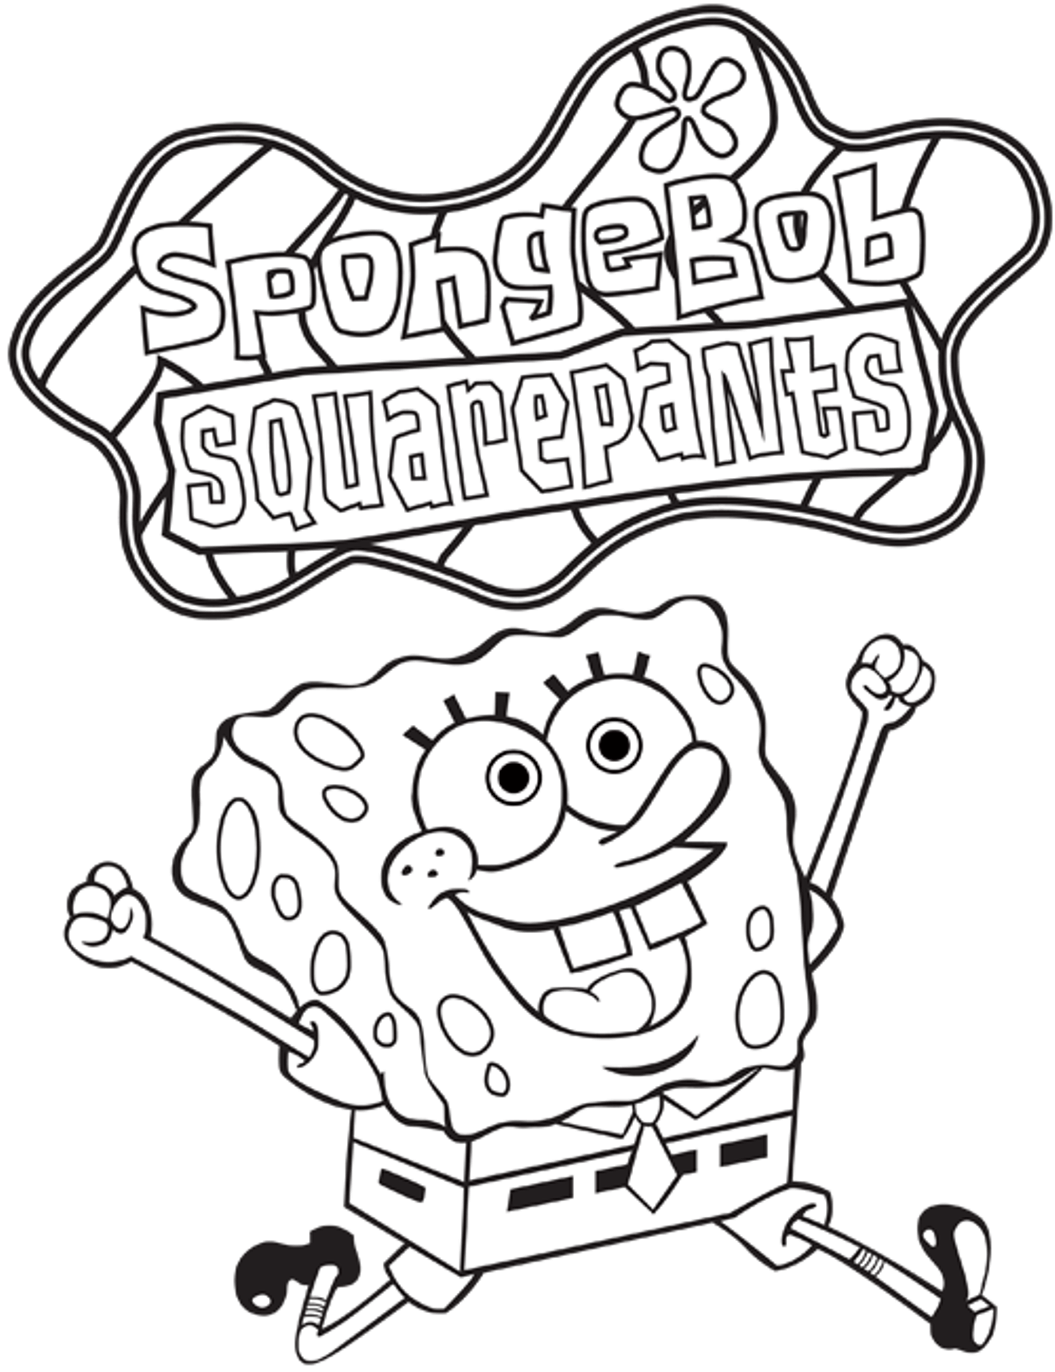 Spongebob Squarepants Coloring Pages2